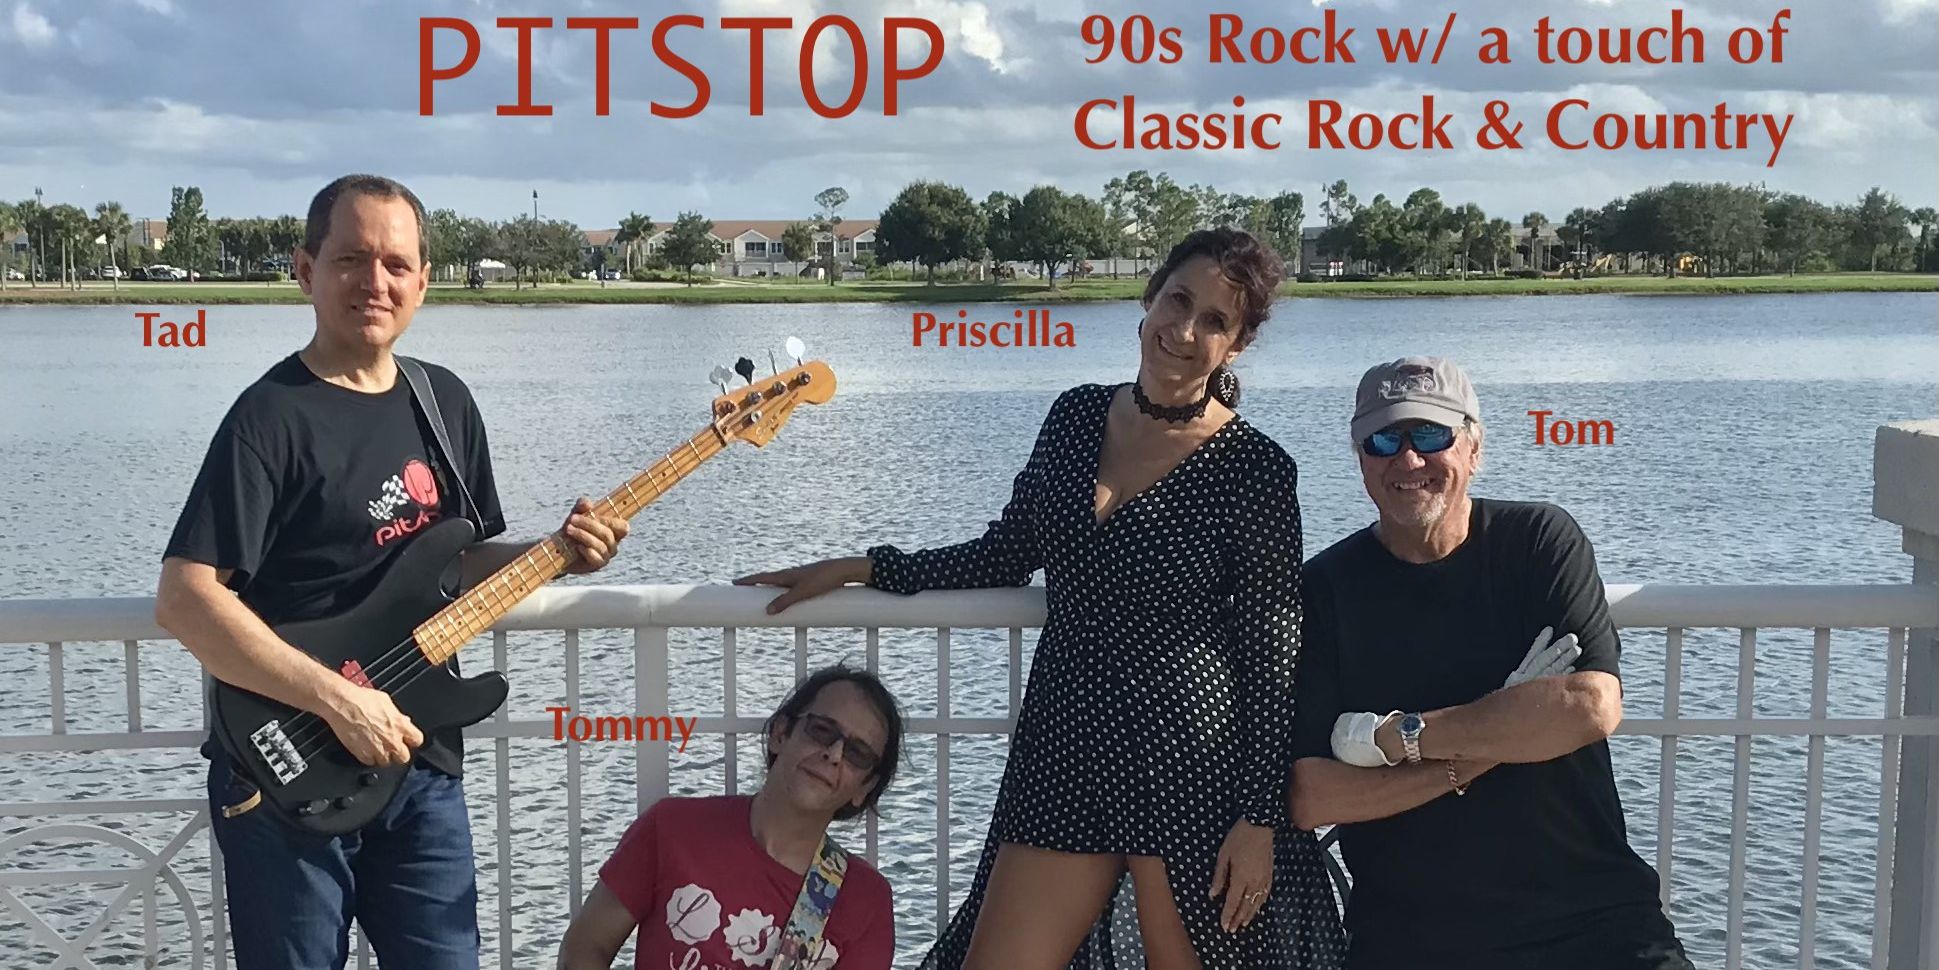 Sunday Funday Rock Party - Stuart FL - PITSTOP Band promotional image